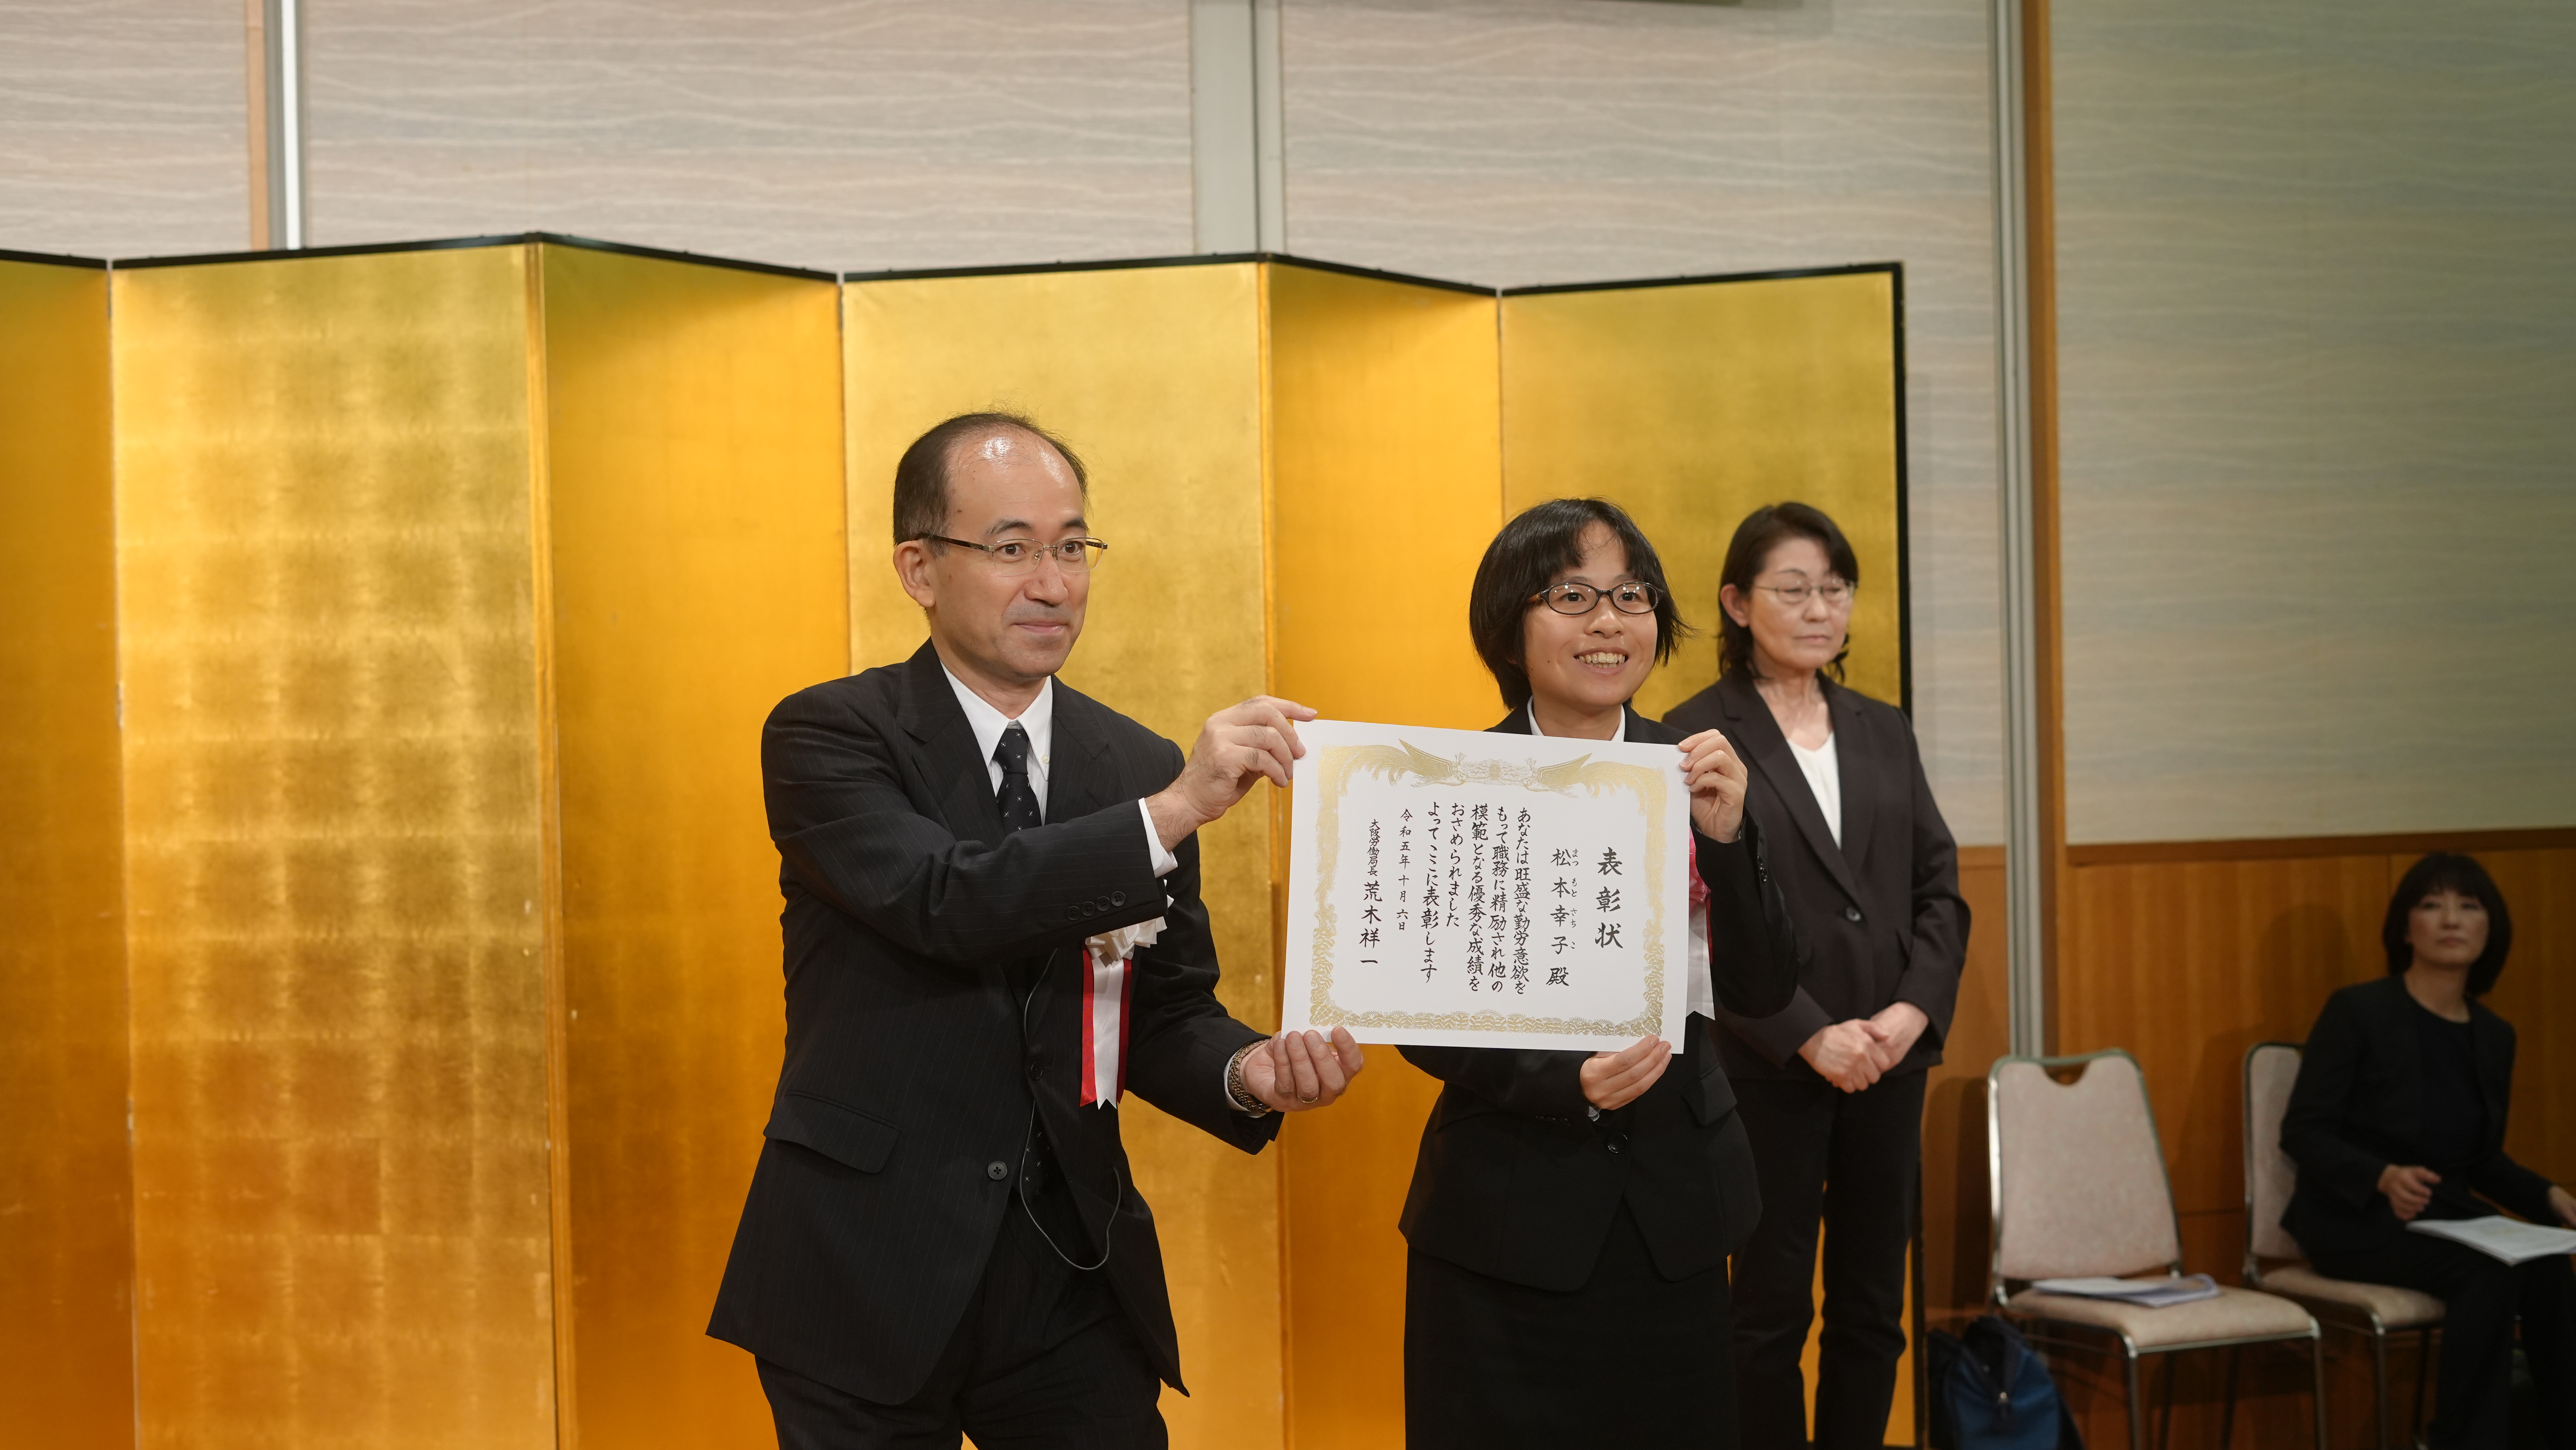 「優良勤労障がい者」として大阪労働局より表彰を受けました